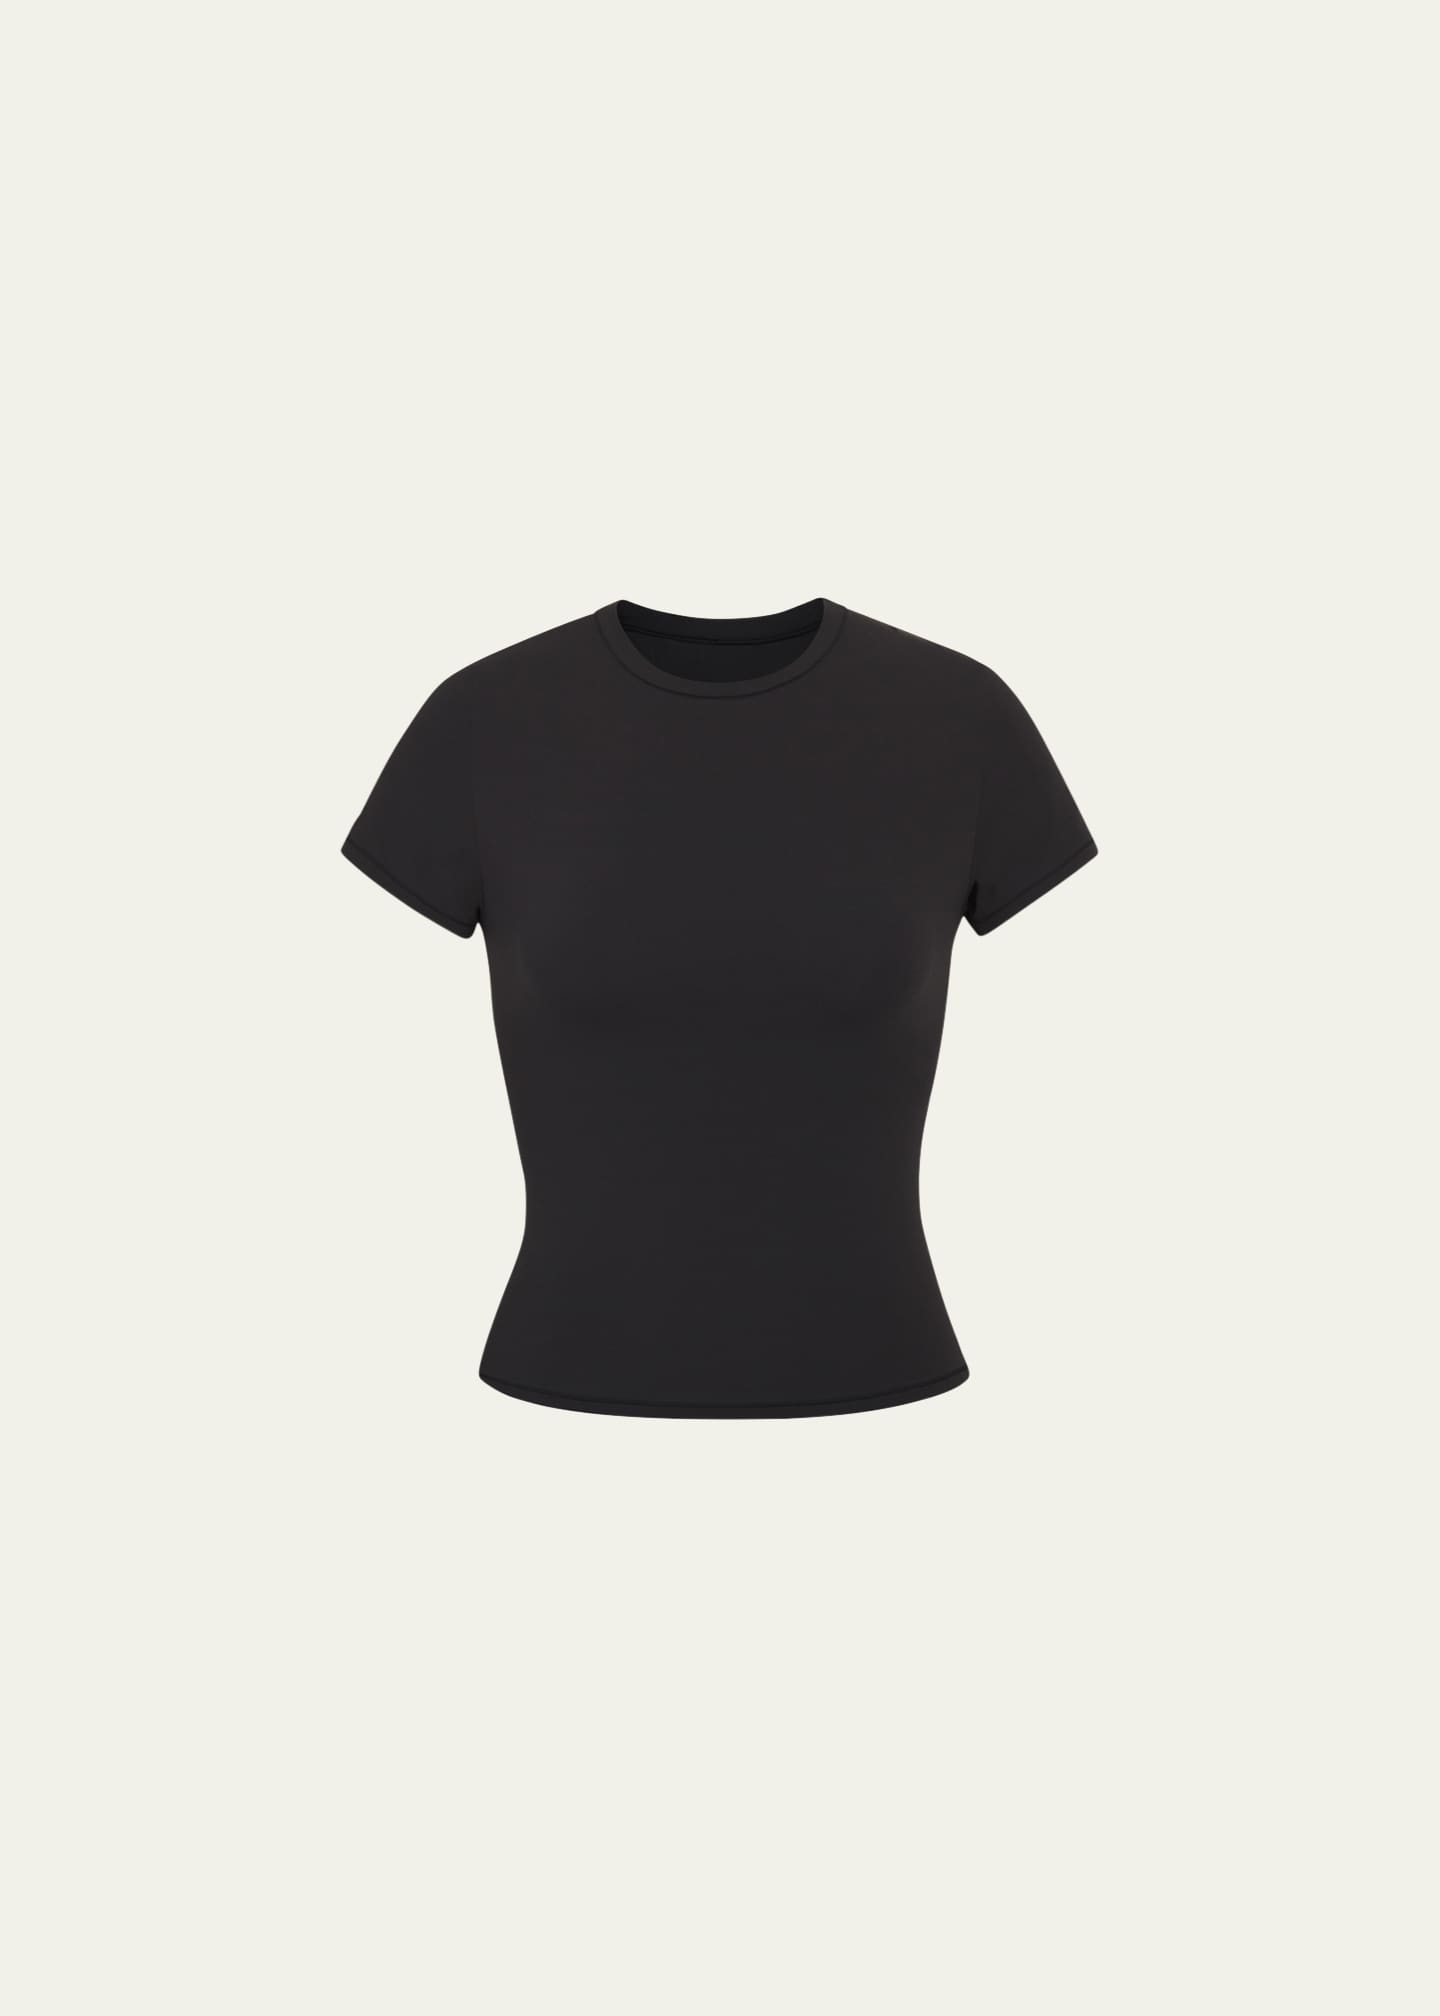 SKIMS: Black Fits Everybody T-Shirt